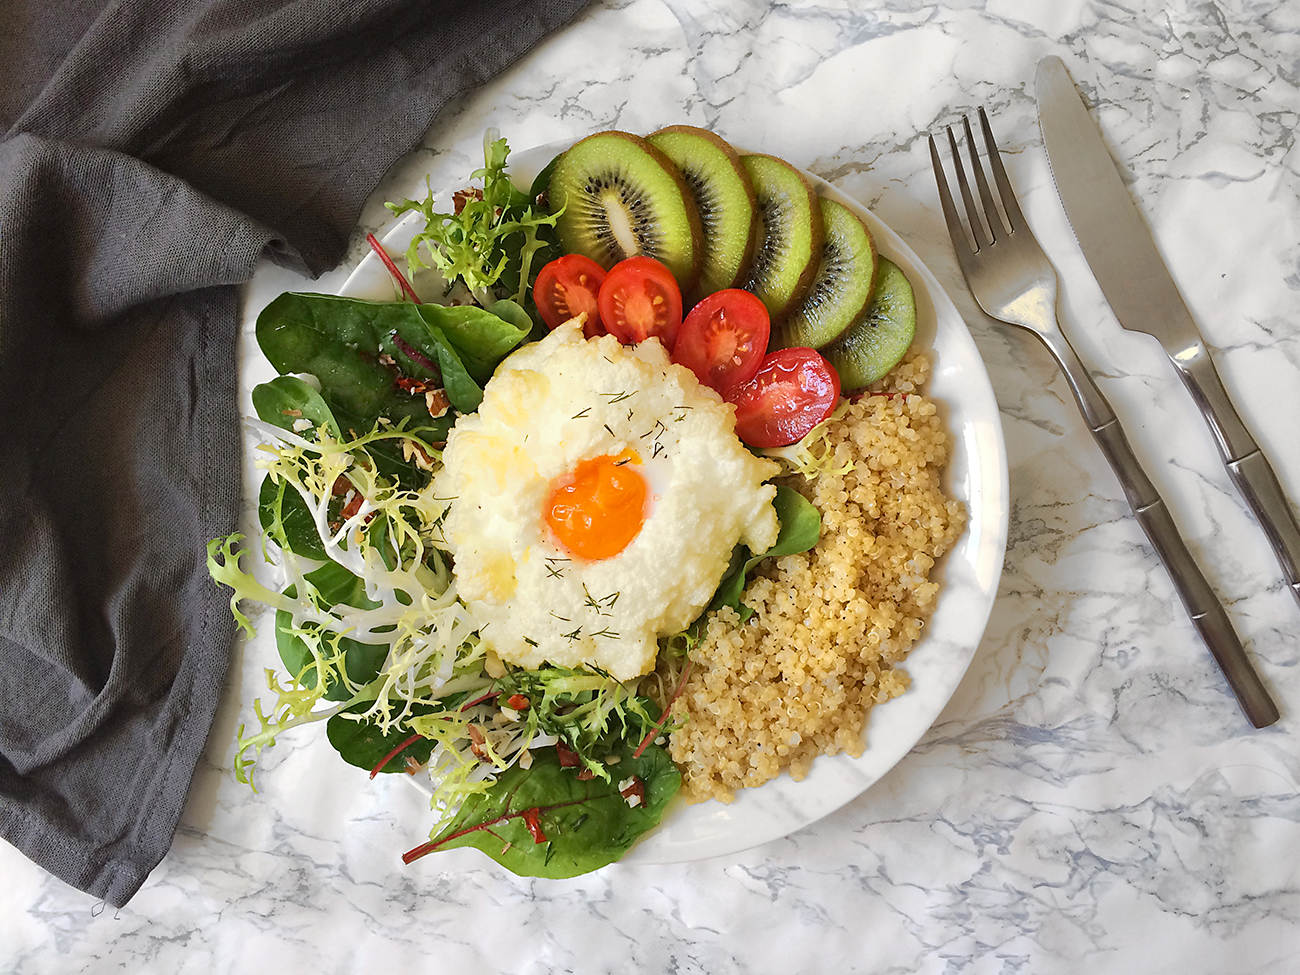 Recette spéciale brunch - le cloud egg, salade verte et quinoa